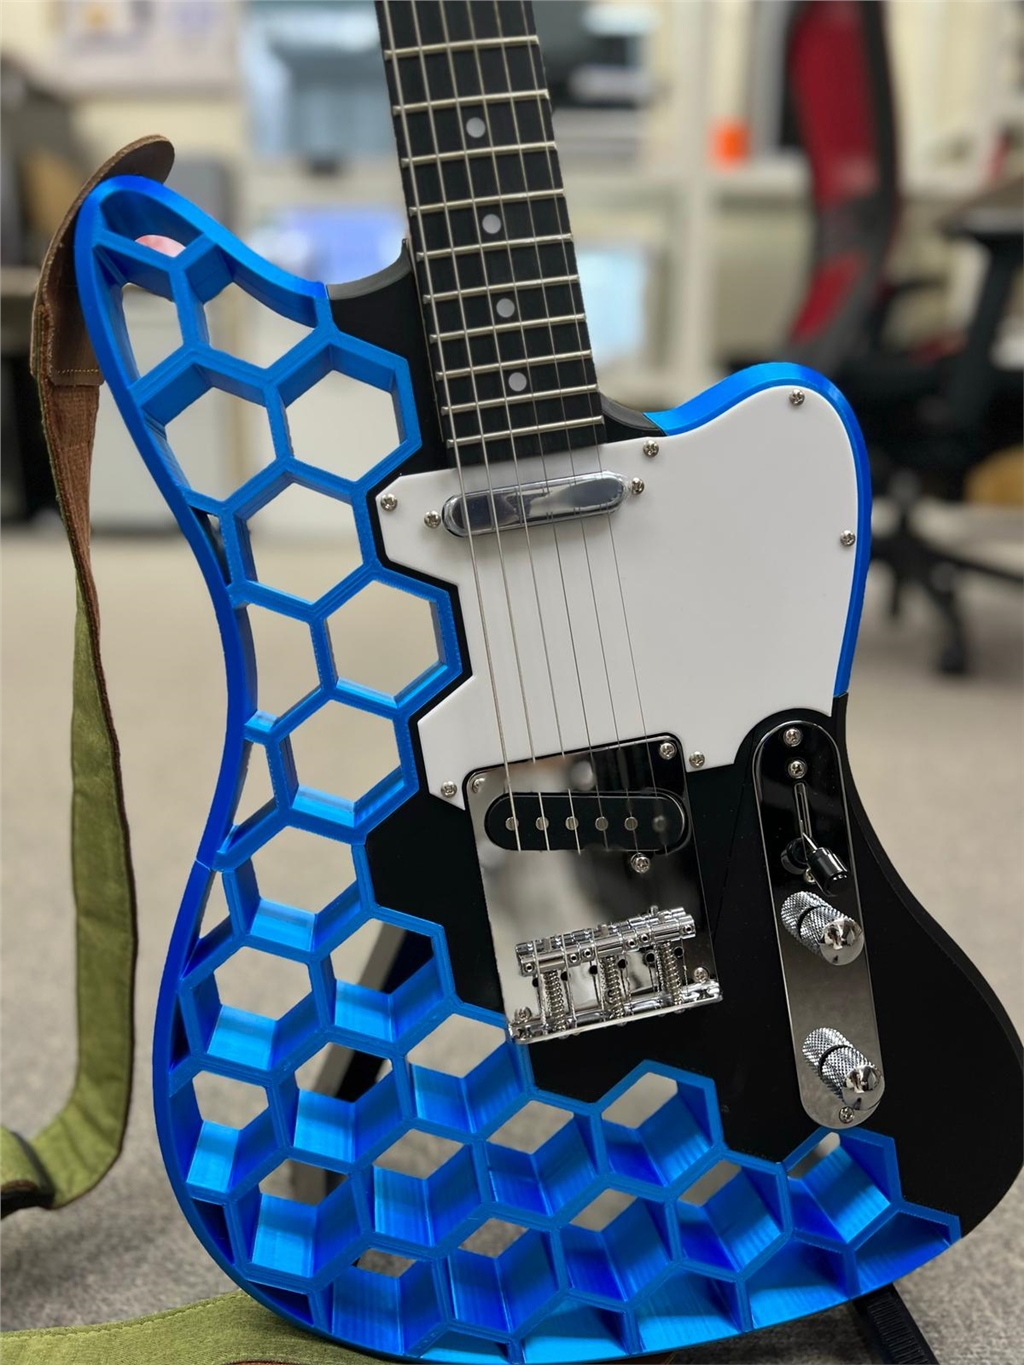 PrusaSlicer 的有機支撐 3DMart HK電吉他製成品